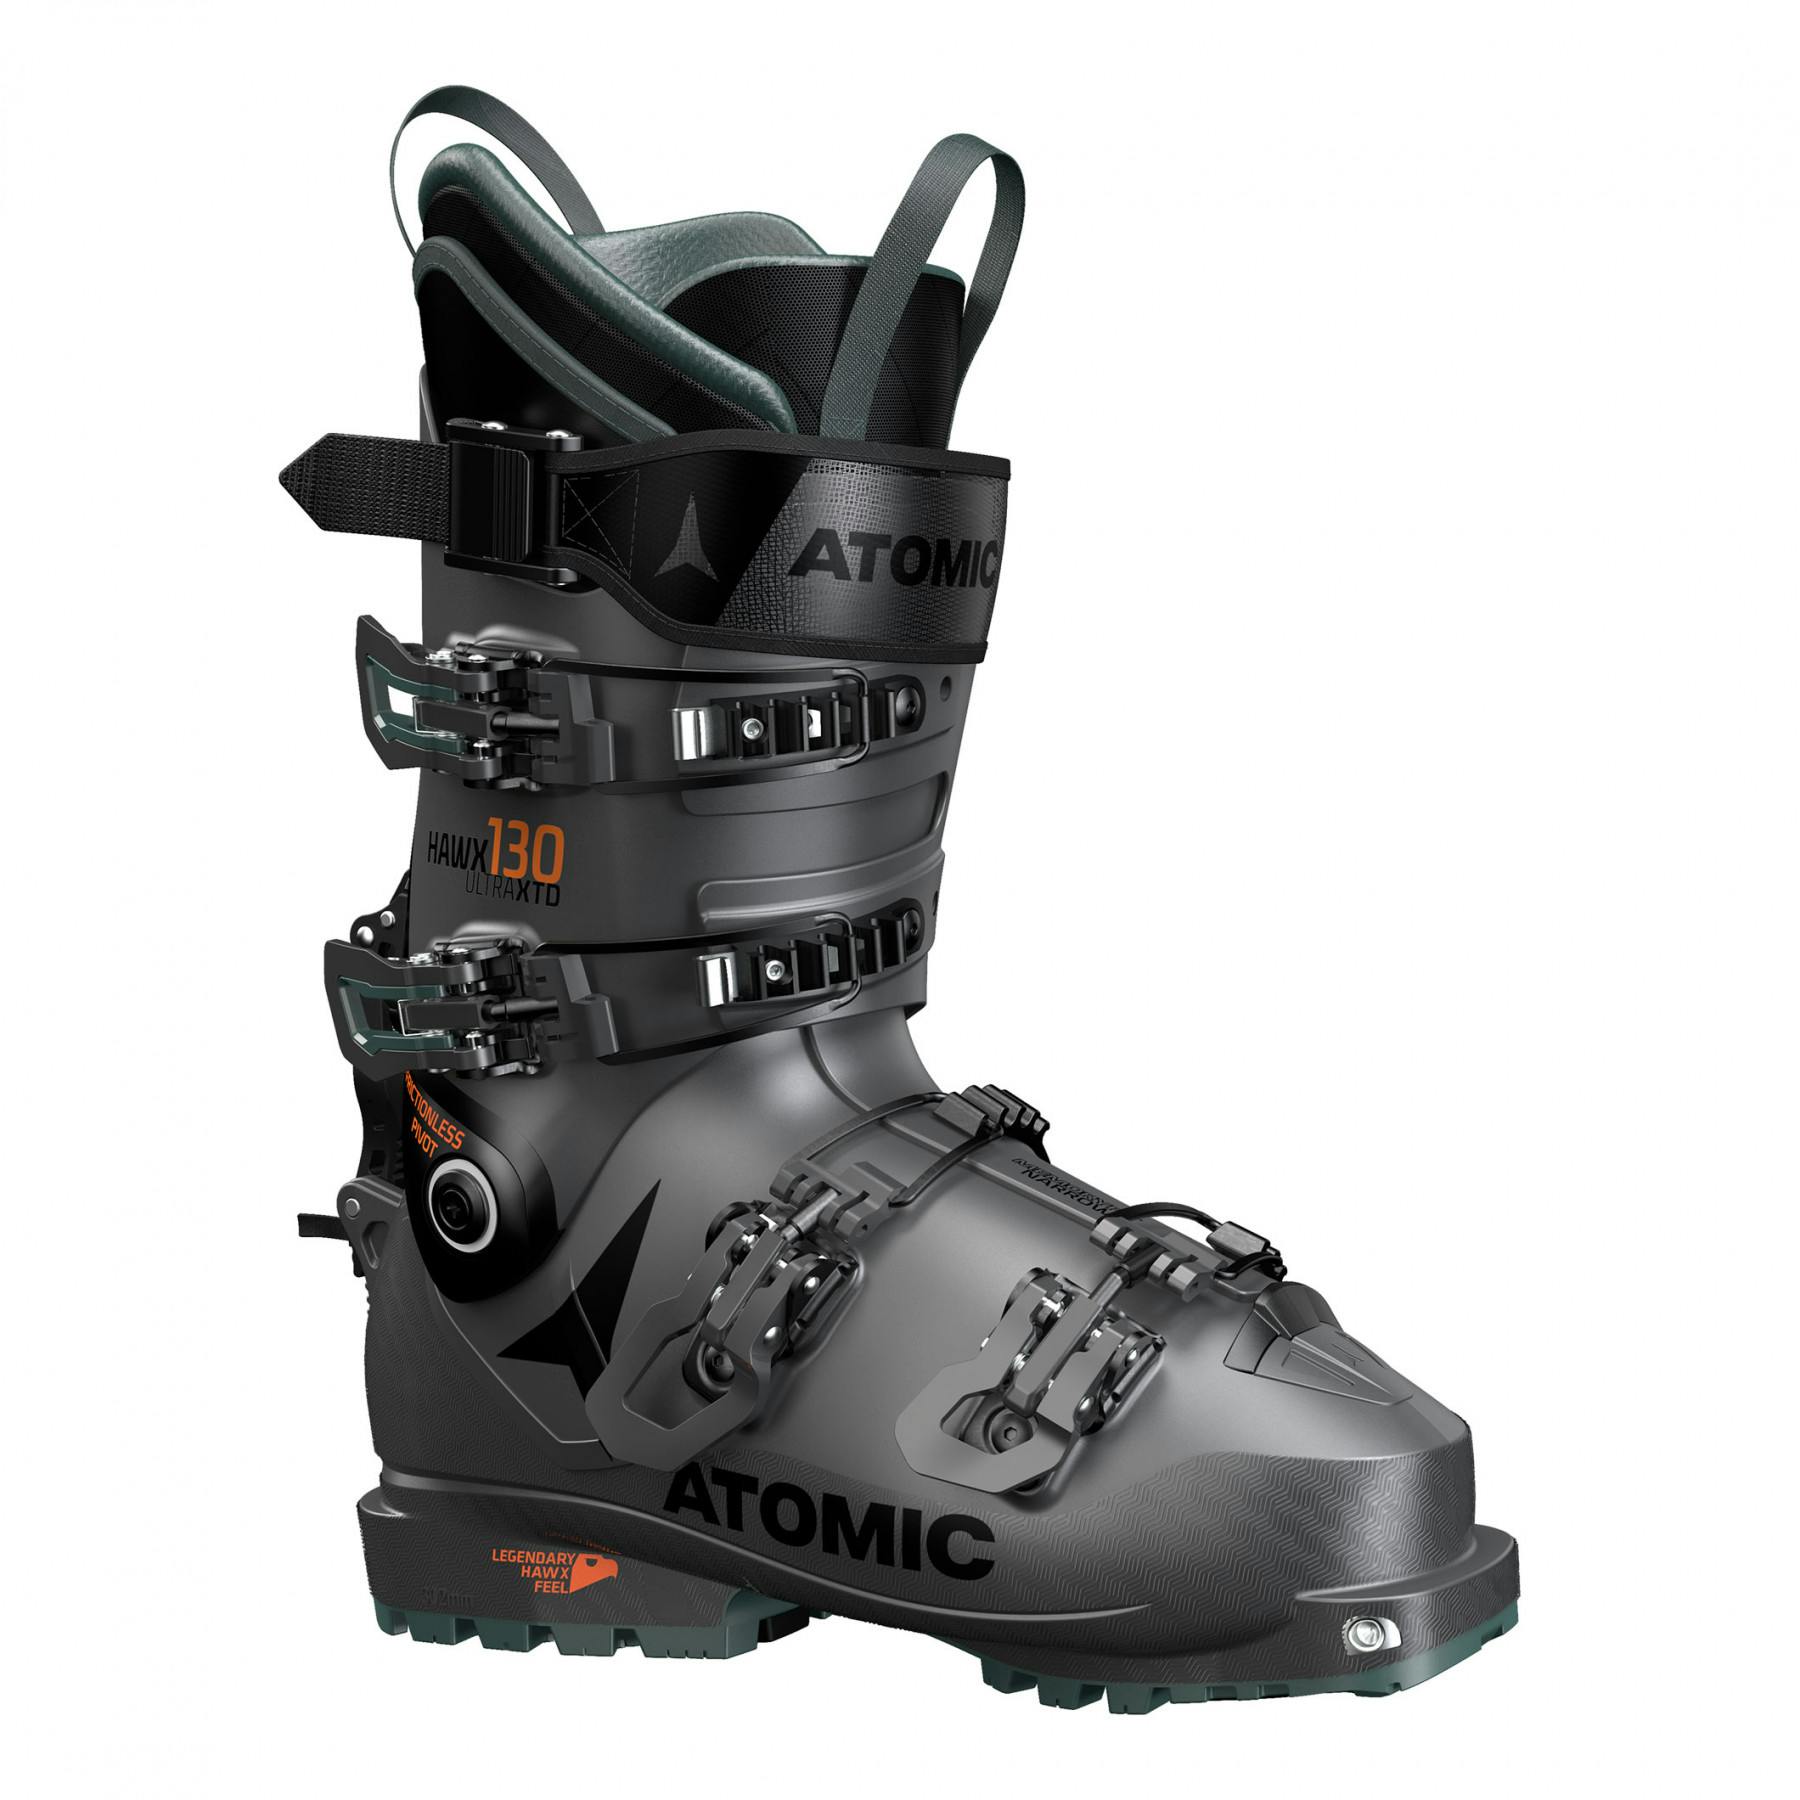 27.5 ski boots